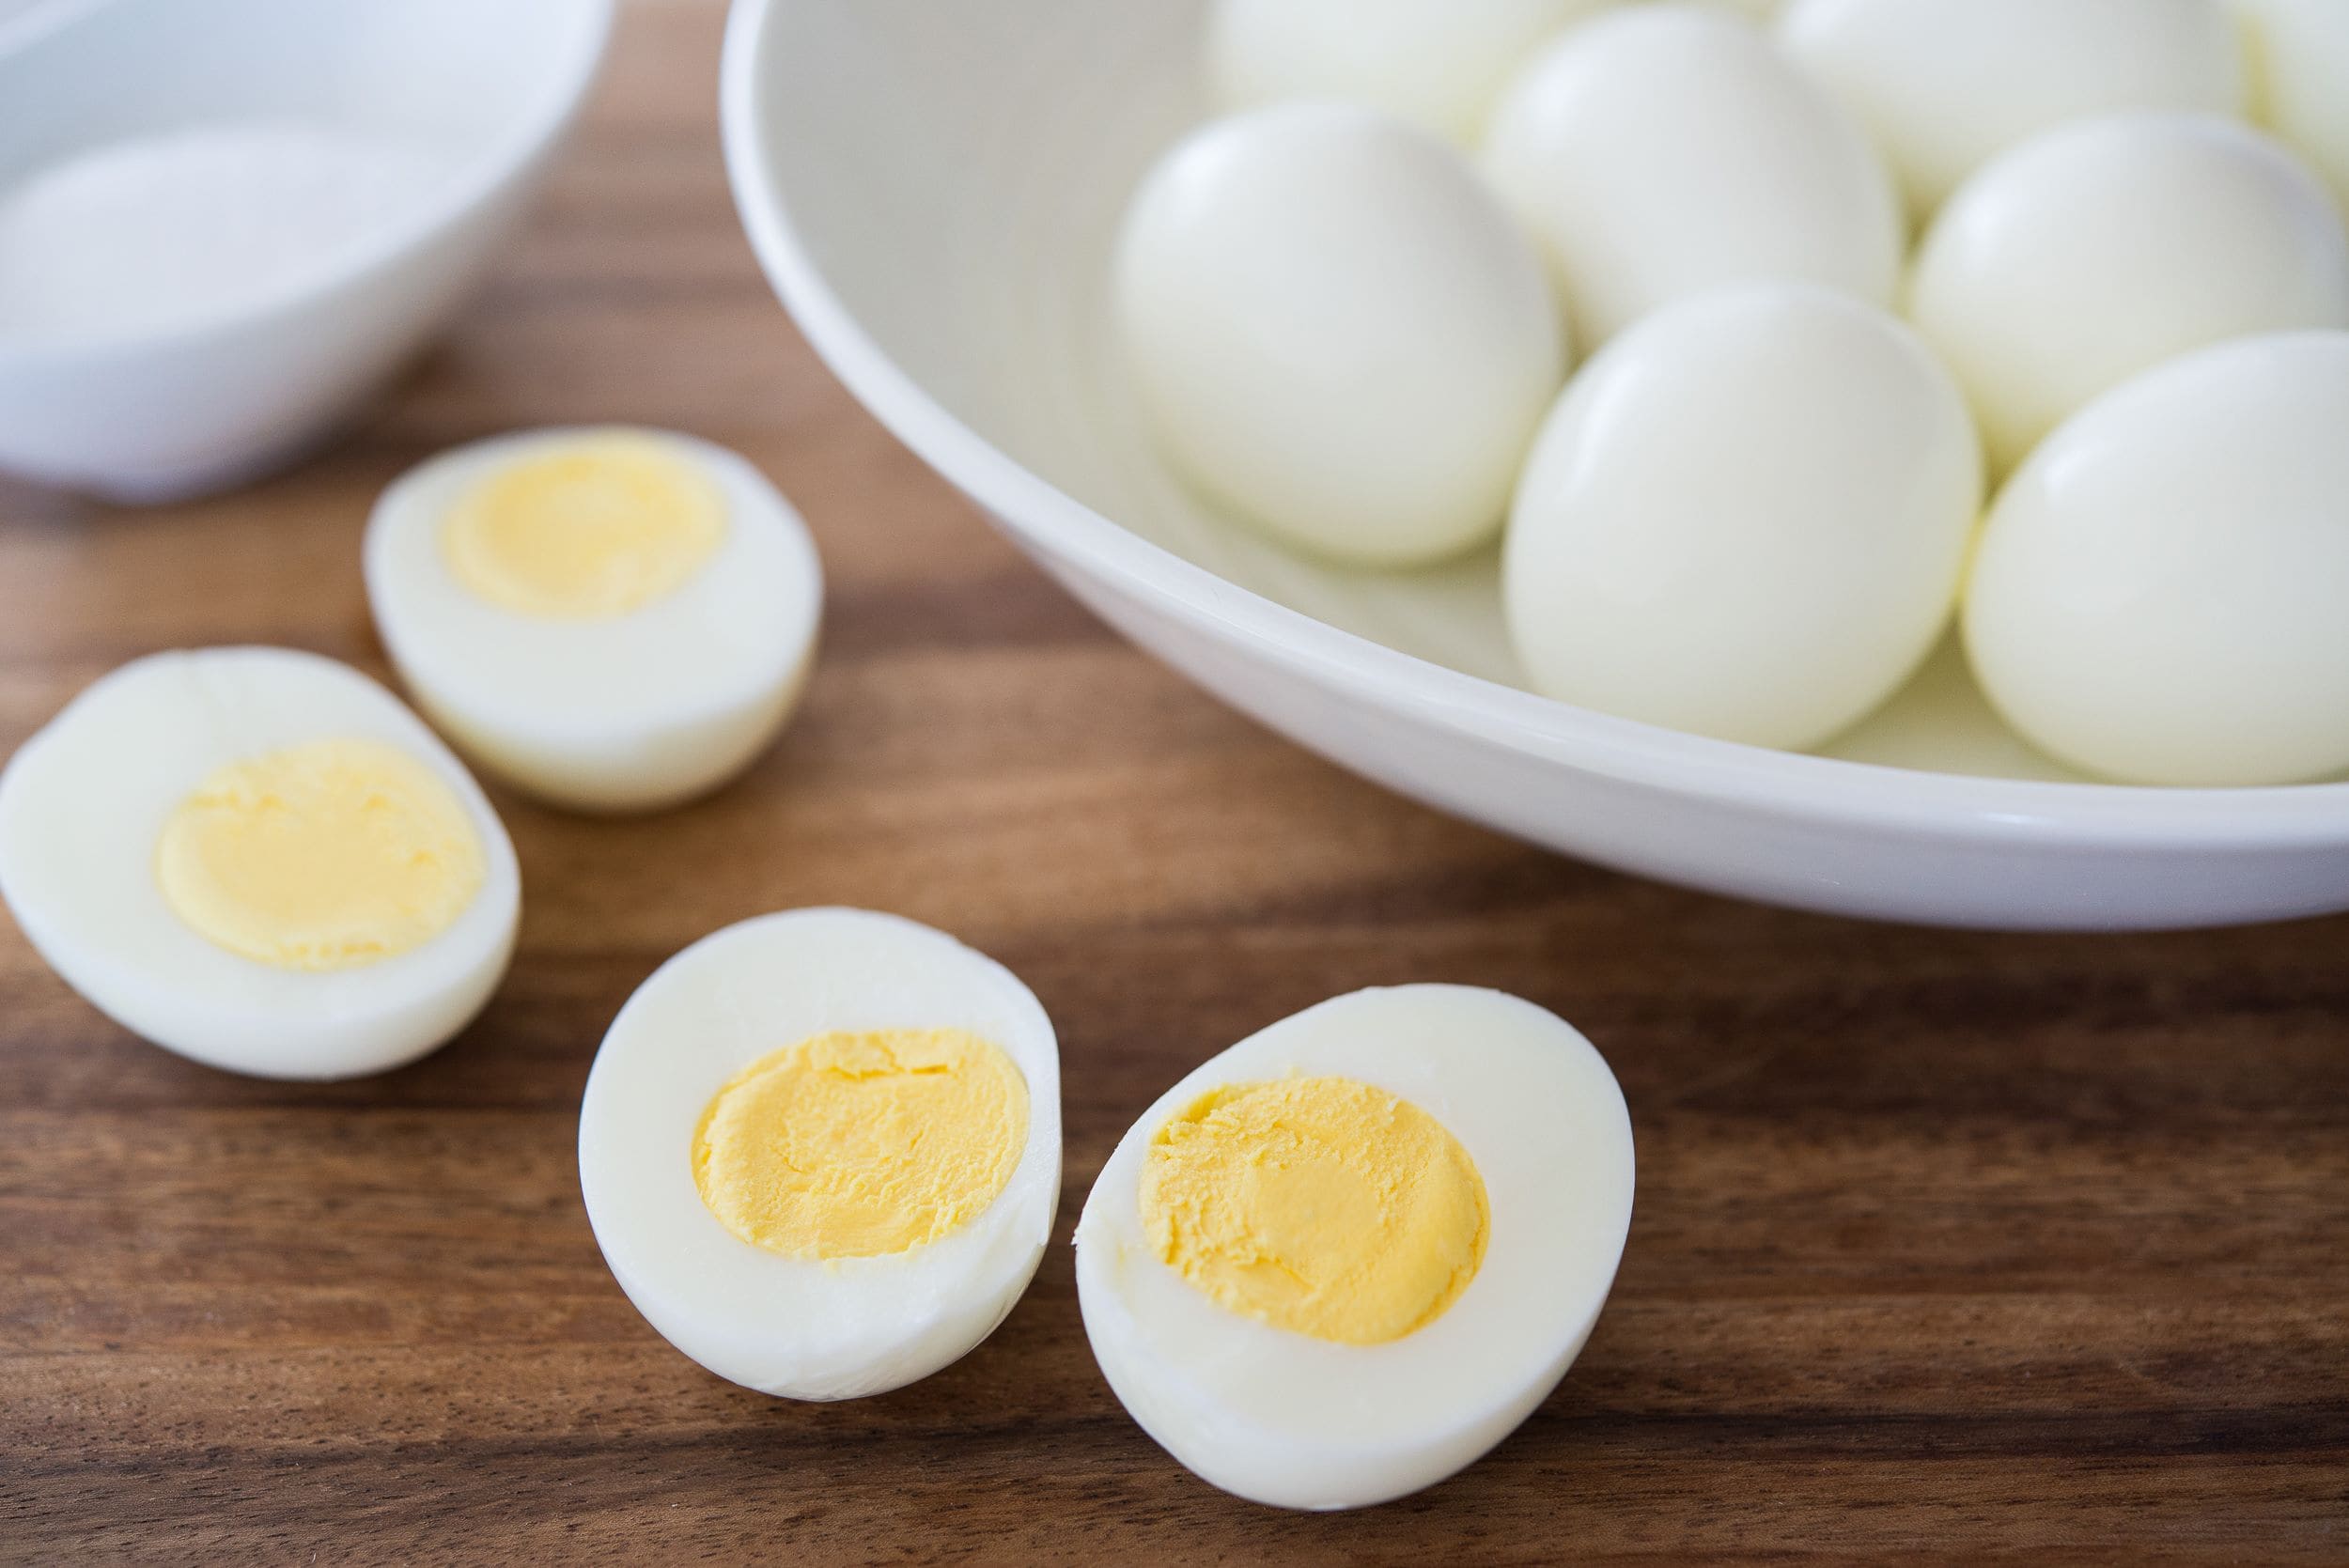 هل تناول البيض يوميا مضر؟ وتعرف على معدل أكل البيض الآمن في الأسبوع للكبار والأطفال